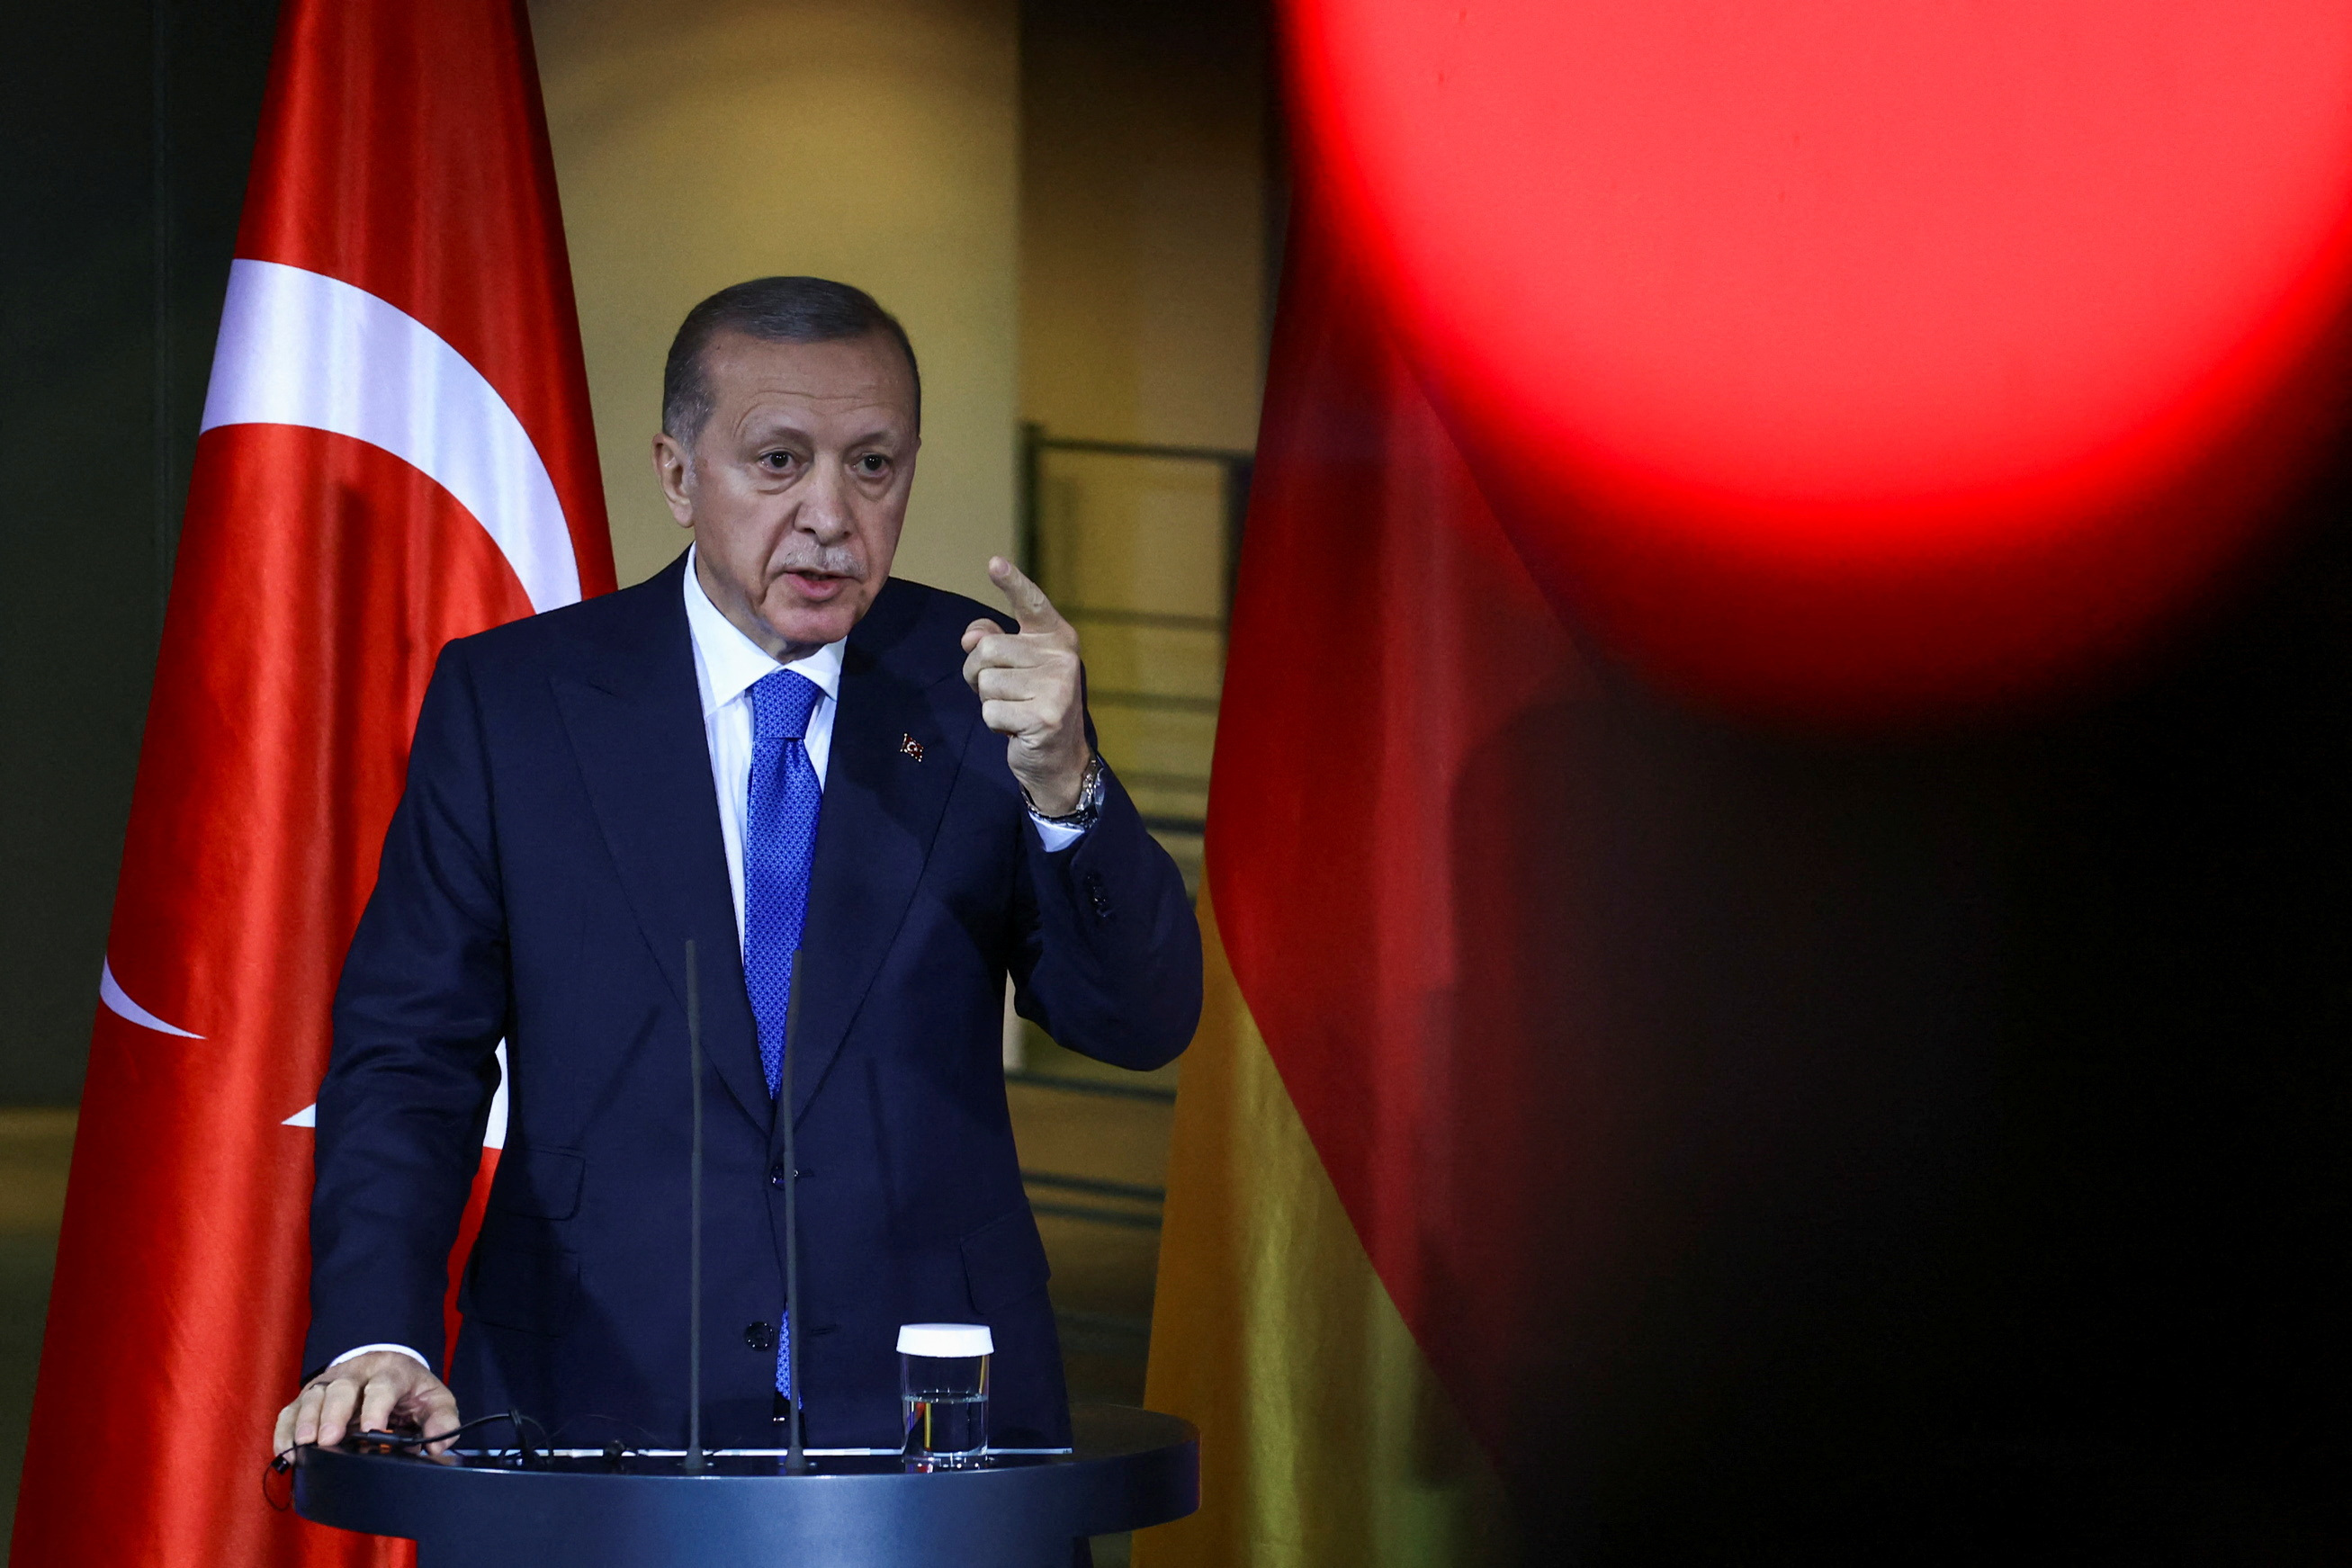 Türk lider Erdoğan, Gazze’deki hastaların tahliyesini görüşmek üzere yakında Mısır’a gitmeyi planladığını söyledi